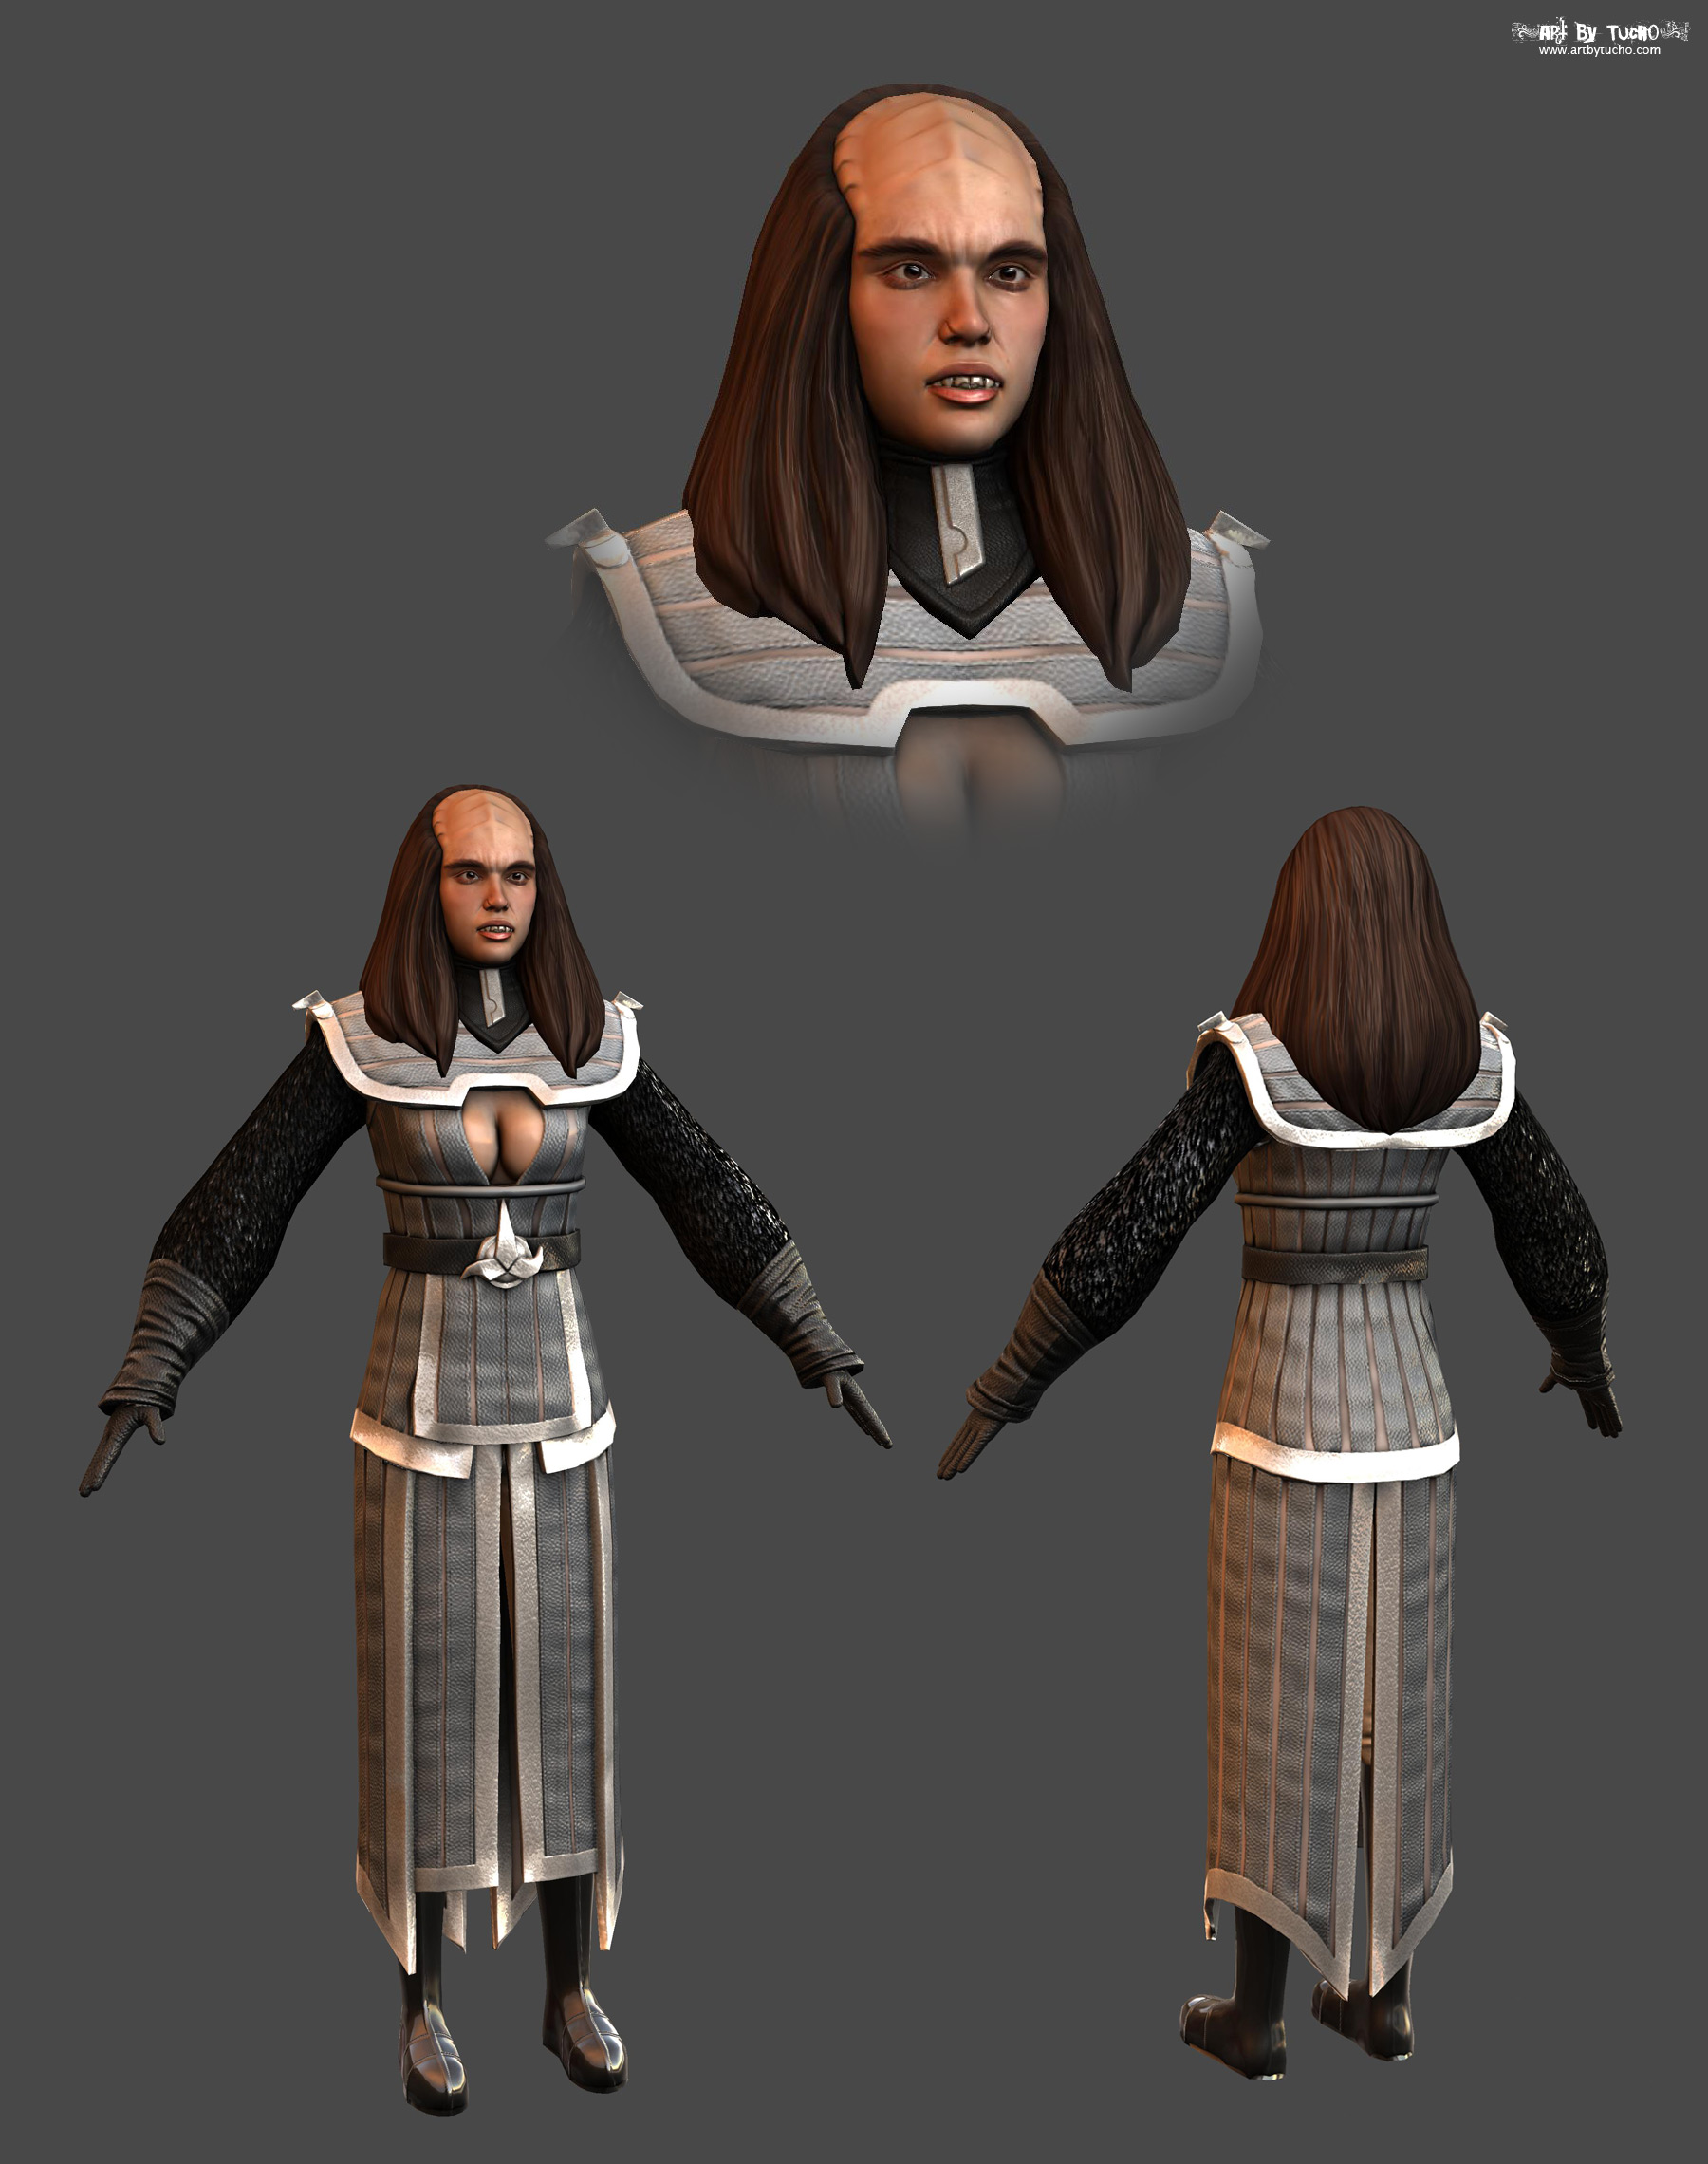 klingon_female.jpg